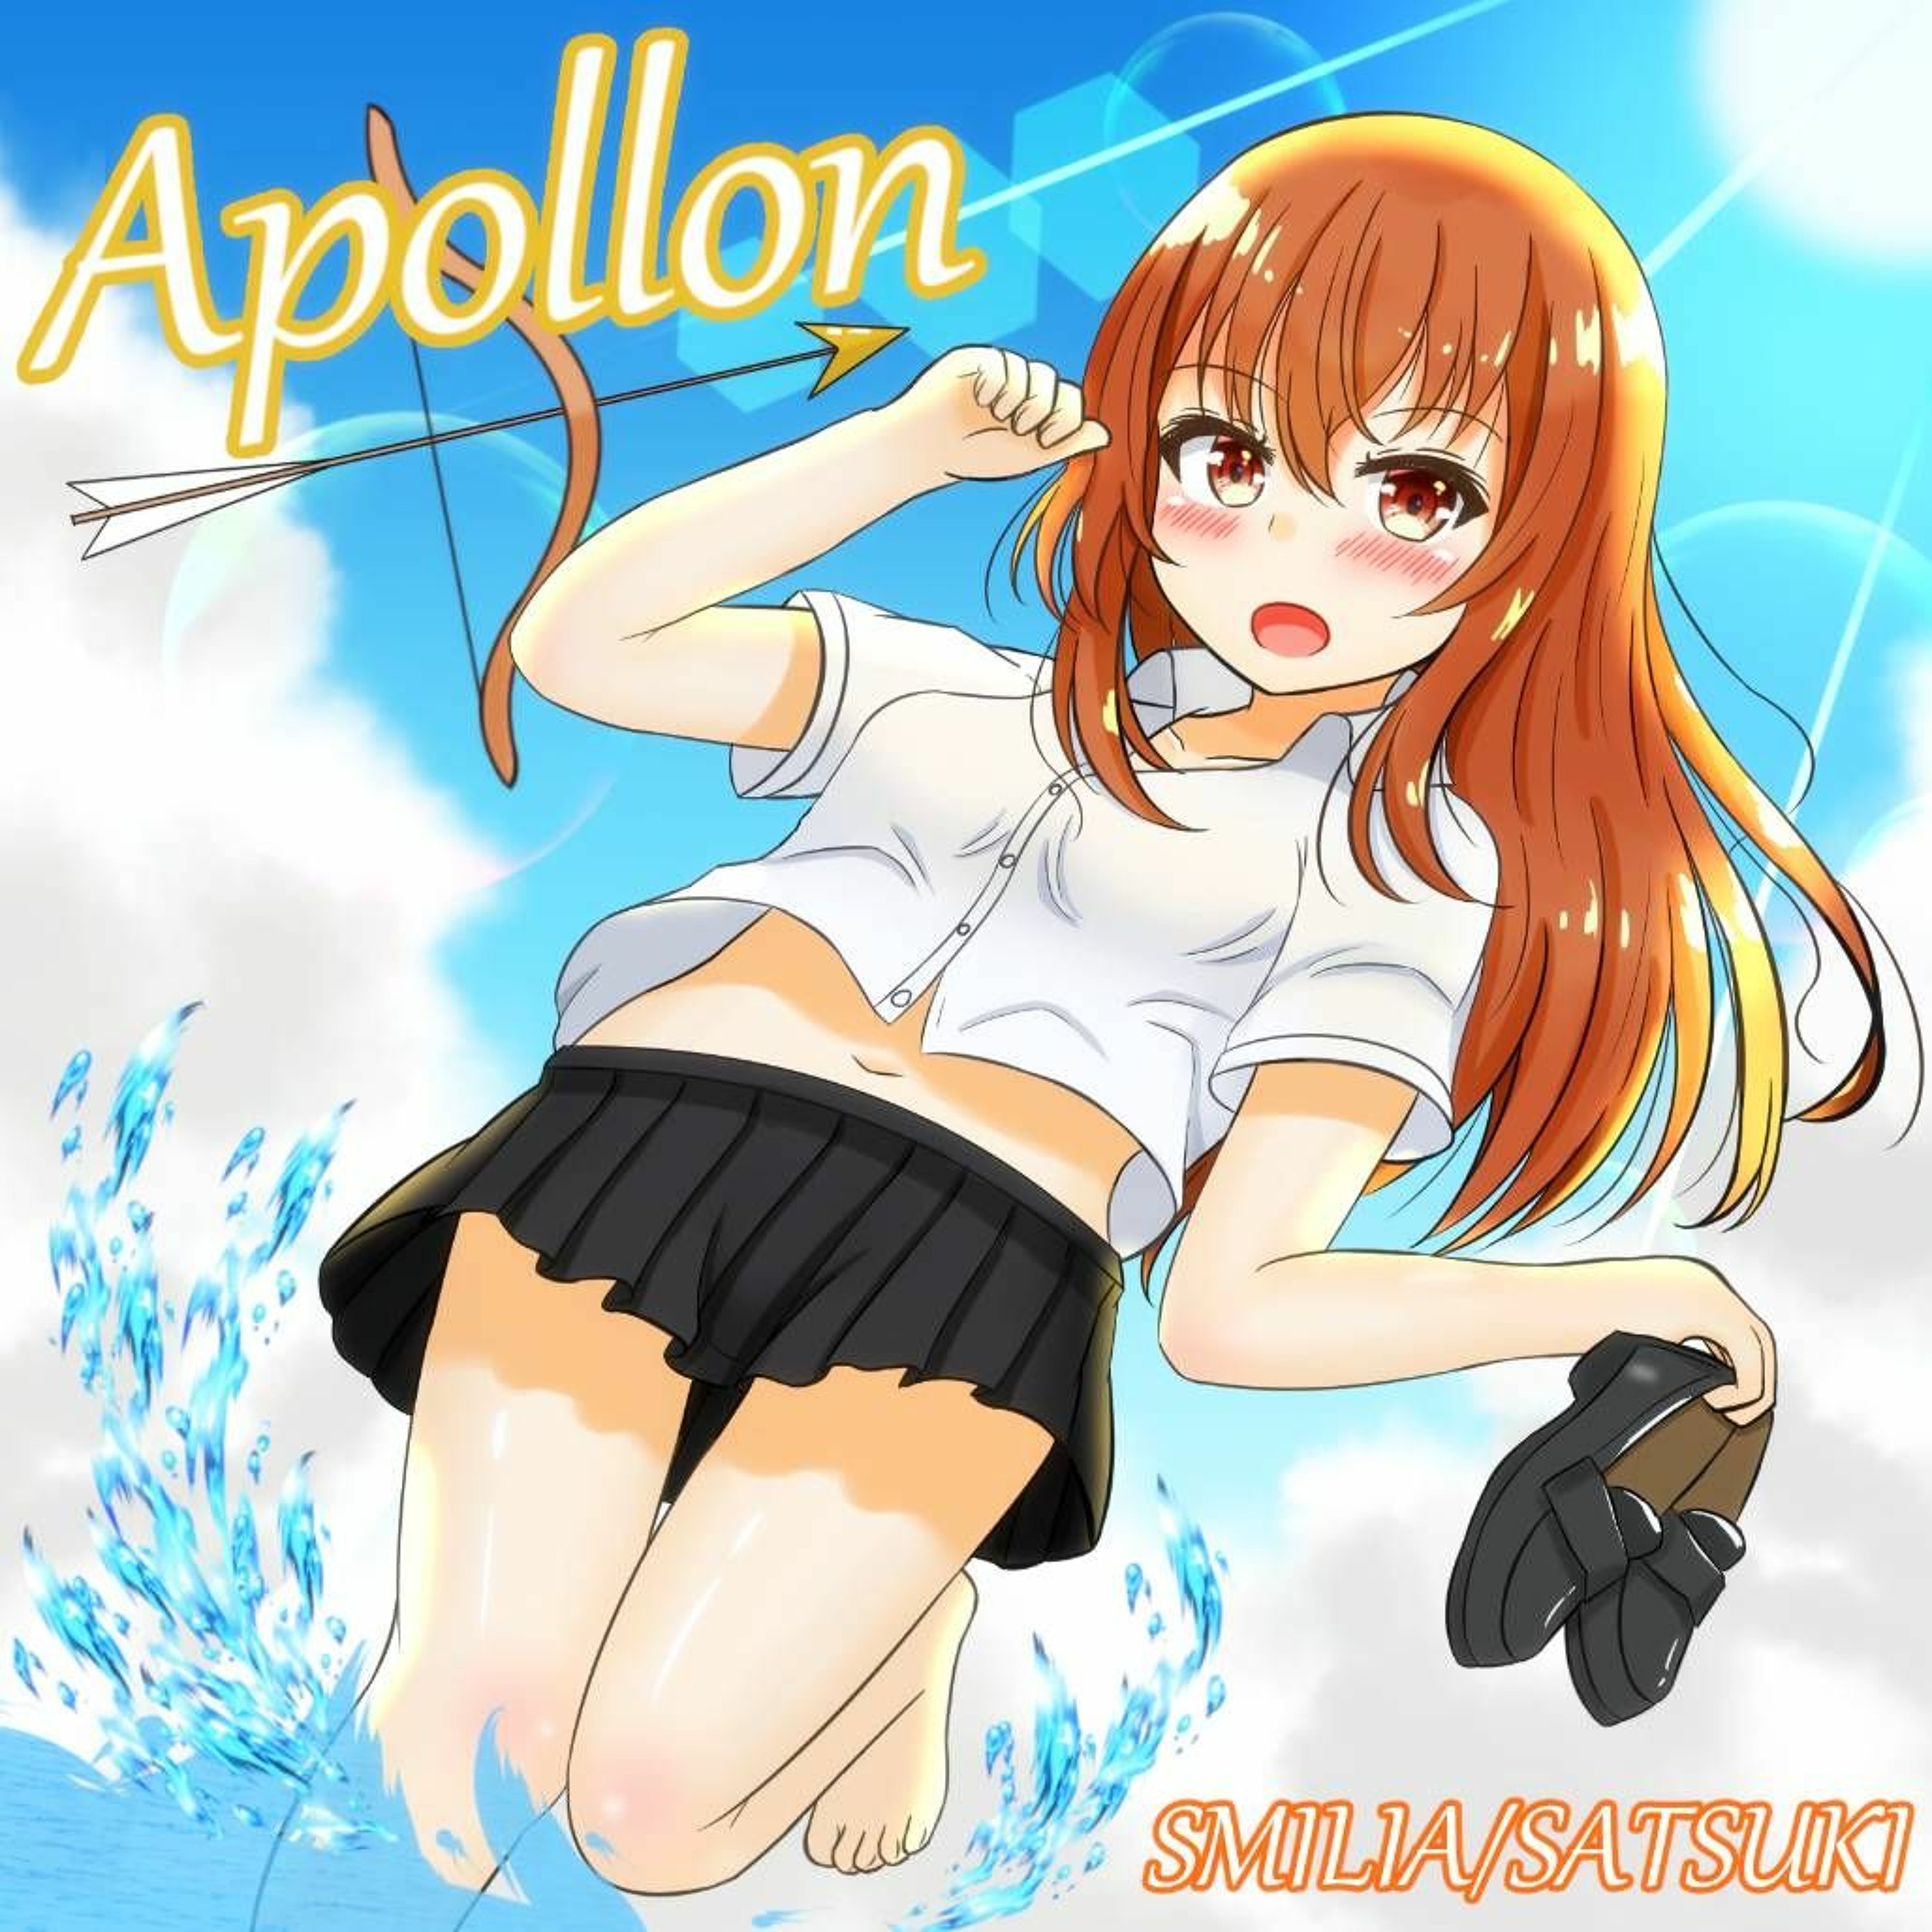 SMILIA(Lia. vs Smile storm) - Apollon